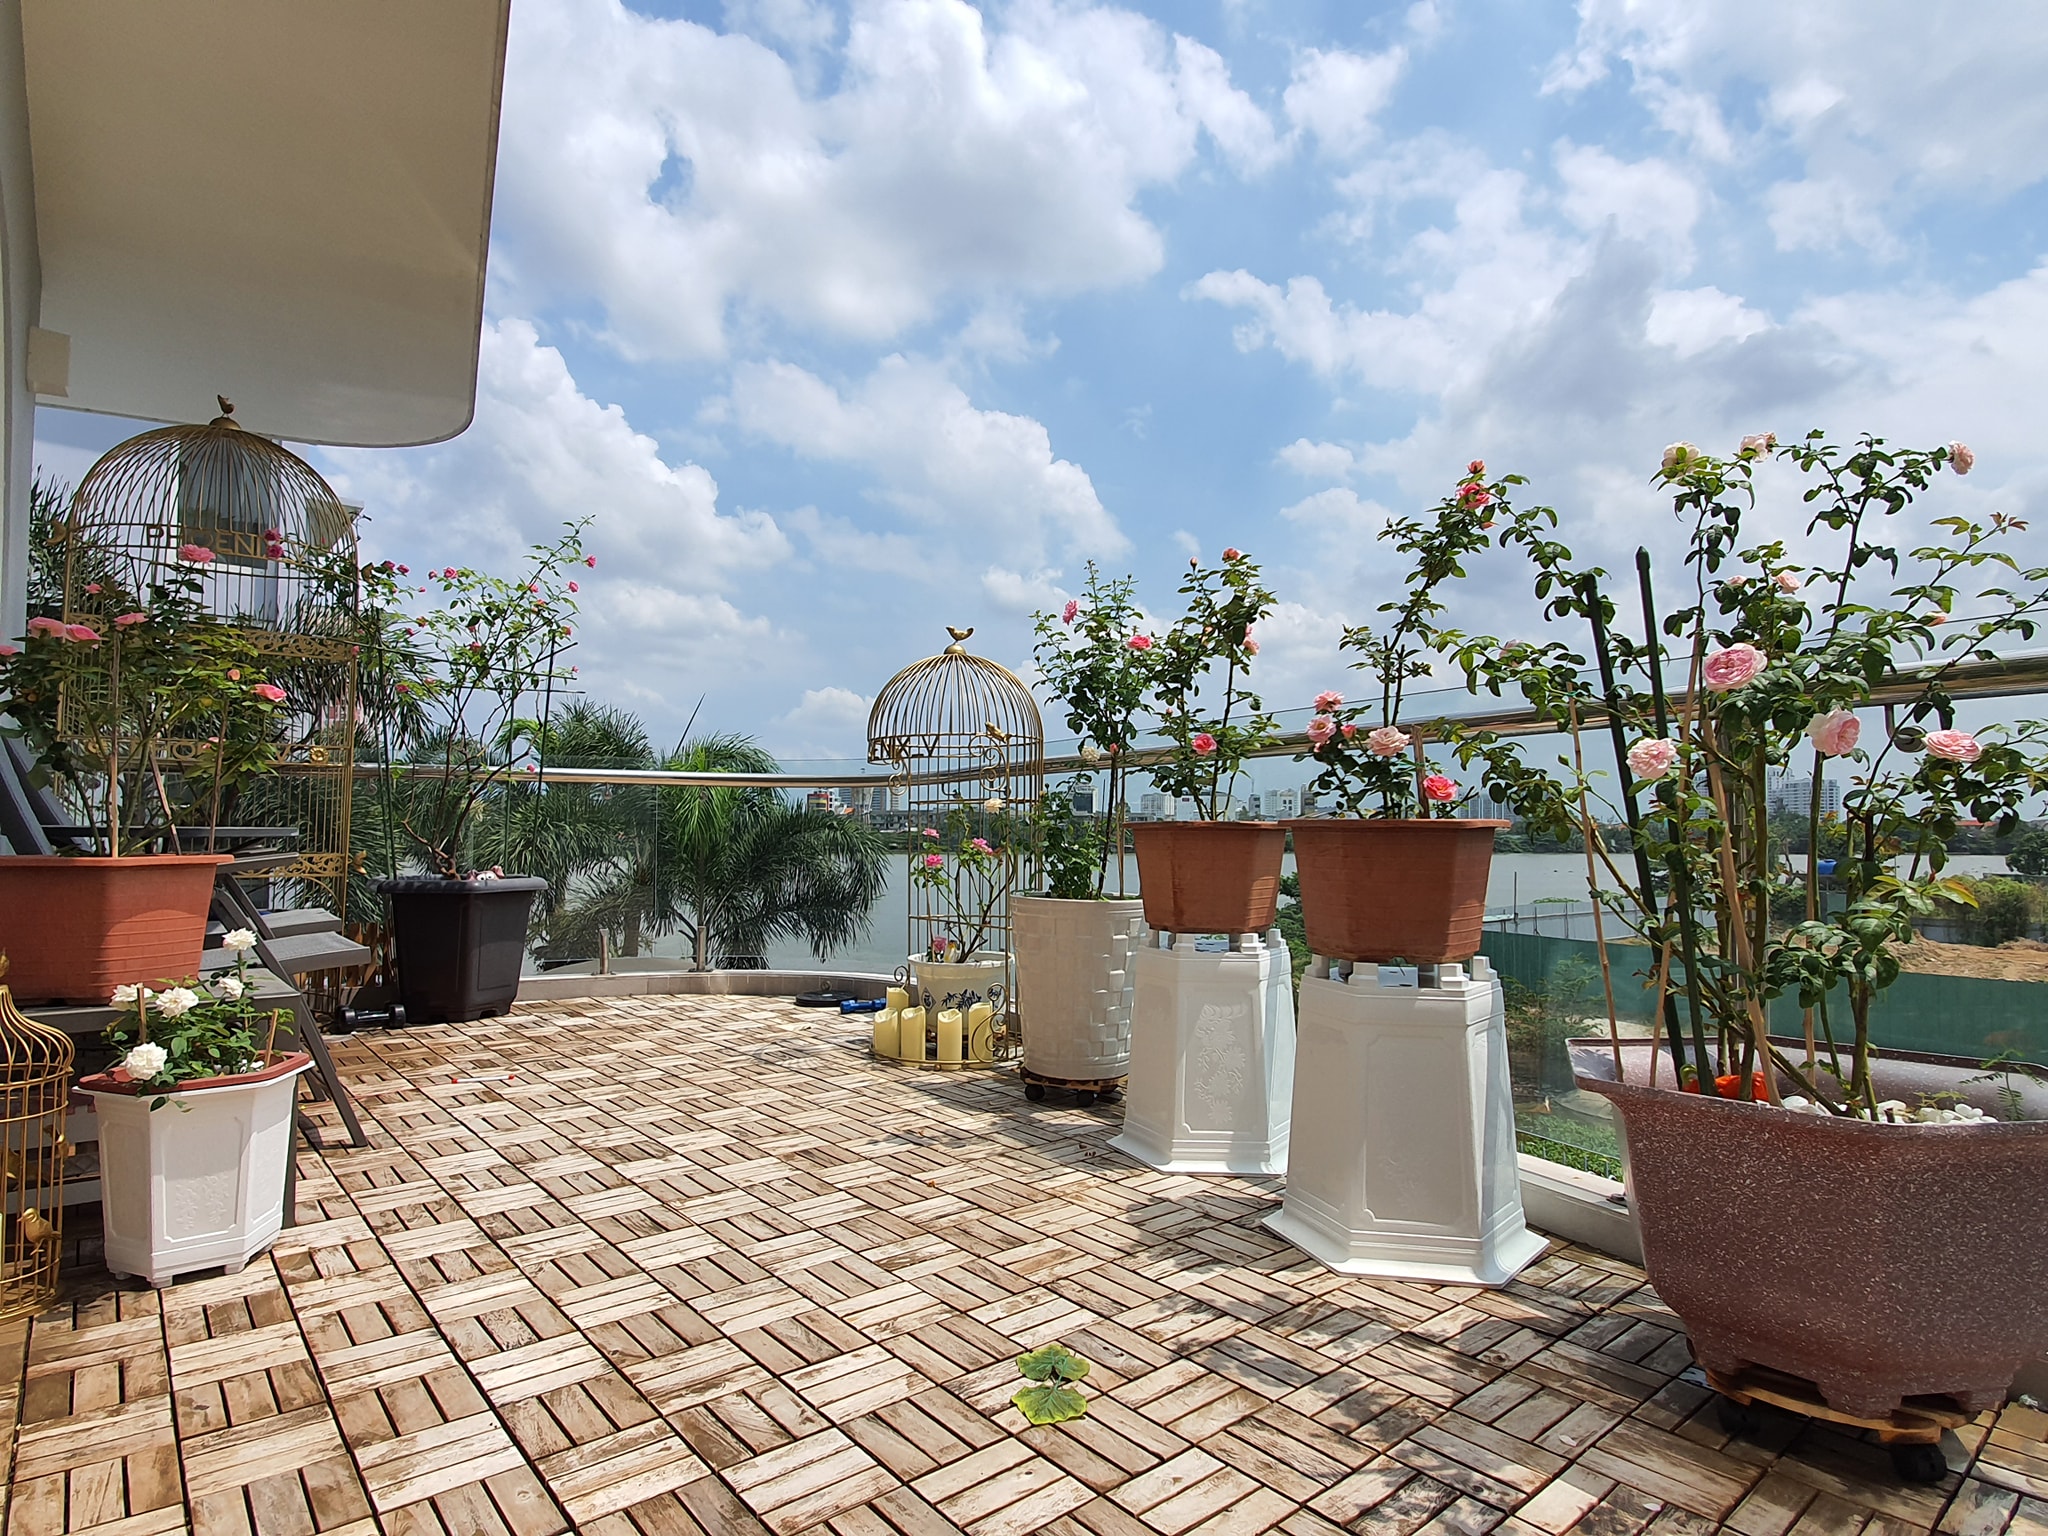 Biệt thự sân thượng ở Sài Gòn luôn là điểm đến lý tưởng cho những ai yêu thích chụp ảnh. Tại đây, bạn sẽ được tận hưởng không gian đẹp và sang trọng để có những bức ảnh đẹp. Bạn cũng có thể tận hưởng không gian xanh mát trên sân thượng và cảm thấy rất thư giãn. Hãy đến để thưởng thức và trải nghiệm nhé!